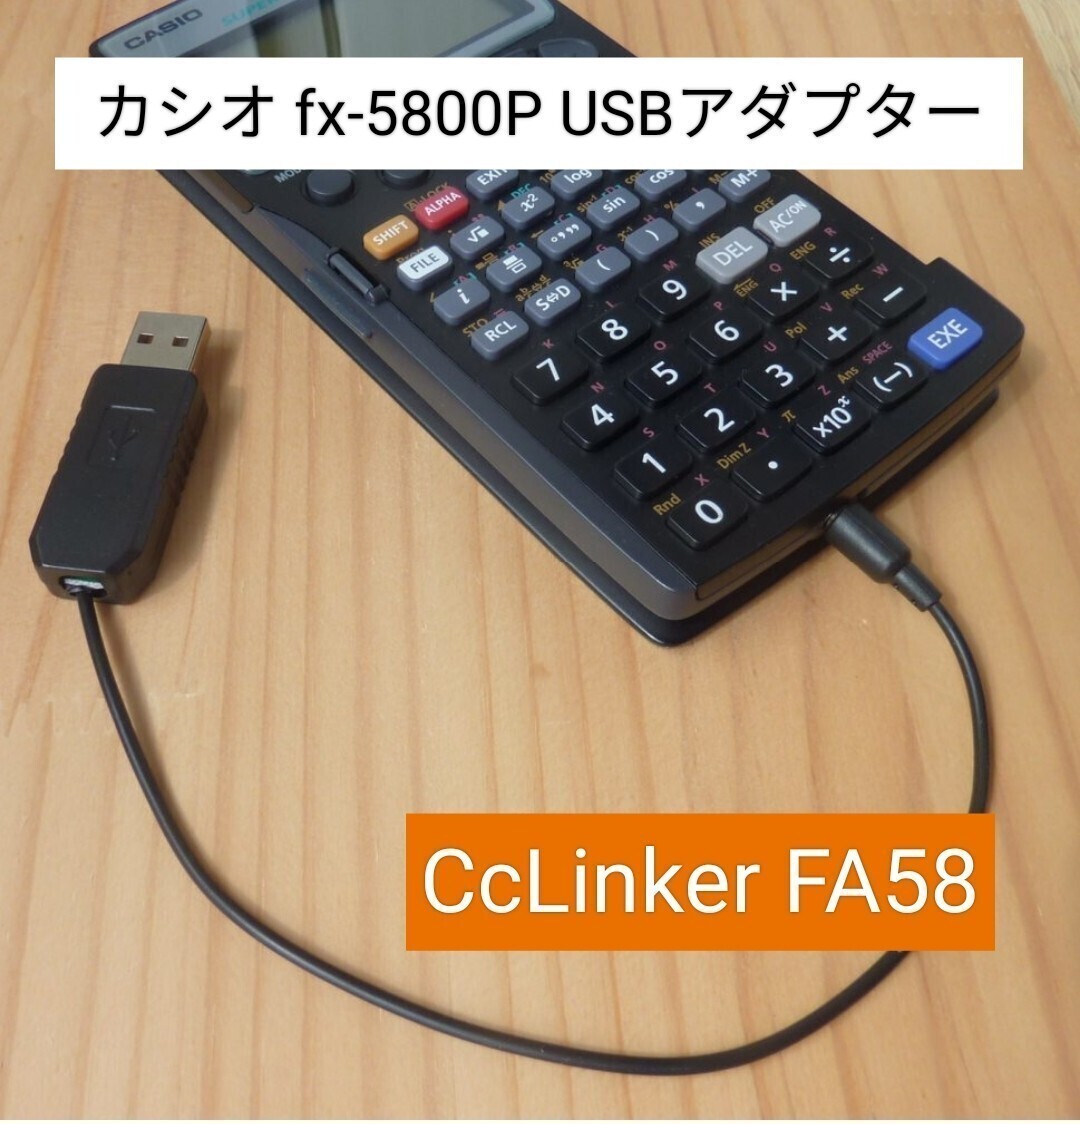 カシオ関数電卓 fx-5800P USBアダプター CcLinker FA58 プログラム保存 パソコンでプログラミング デバッグ機能搭載の画像1